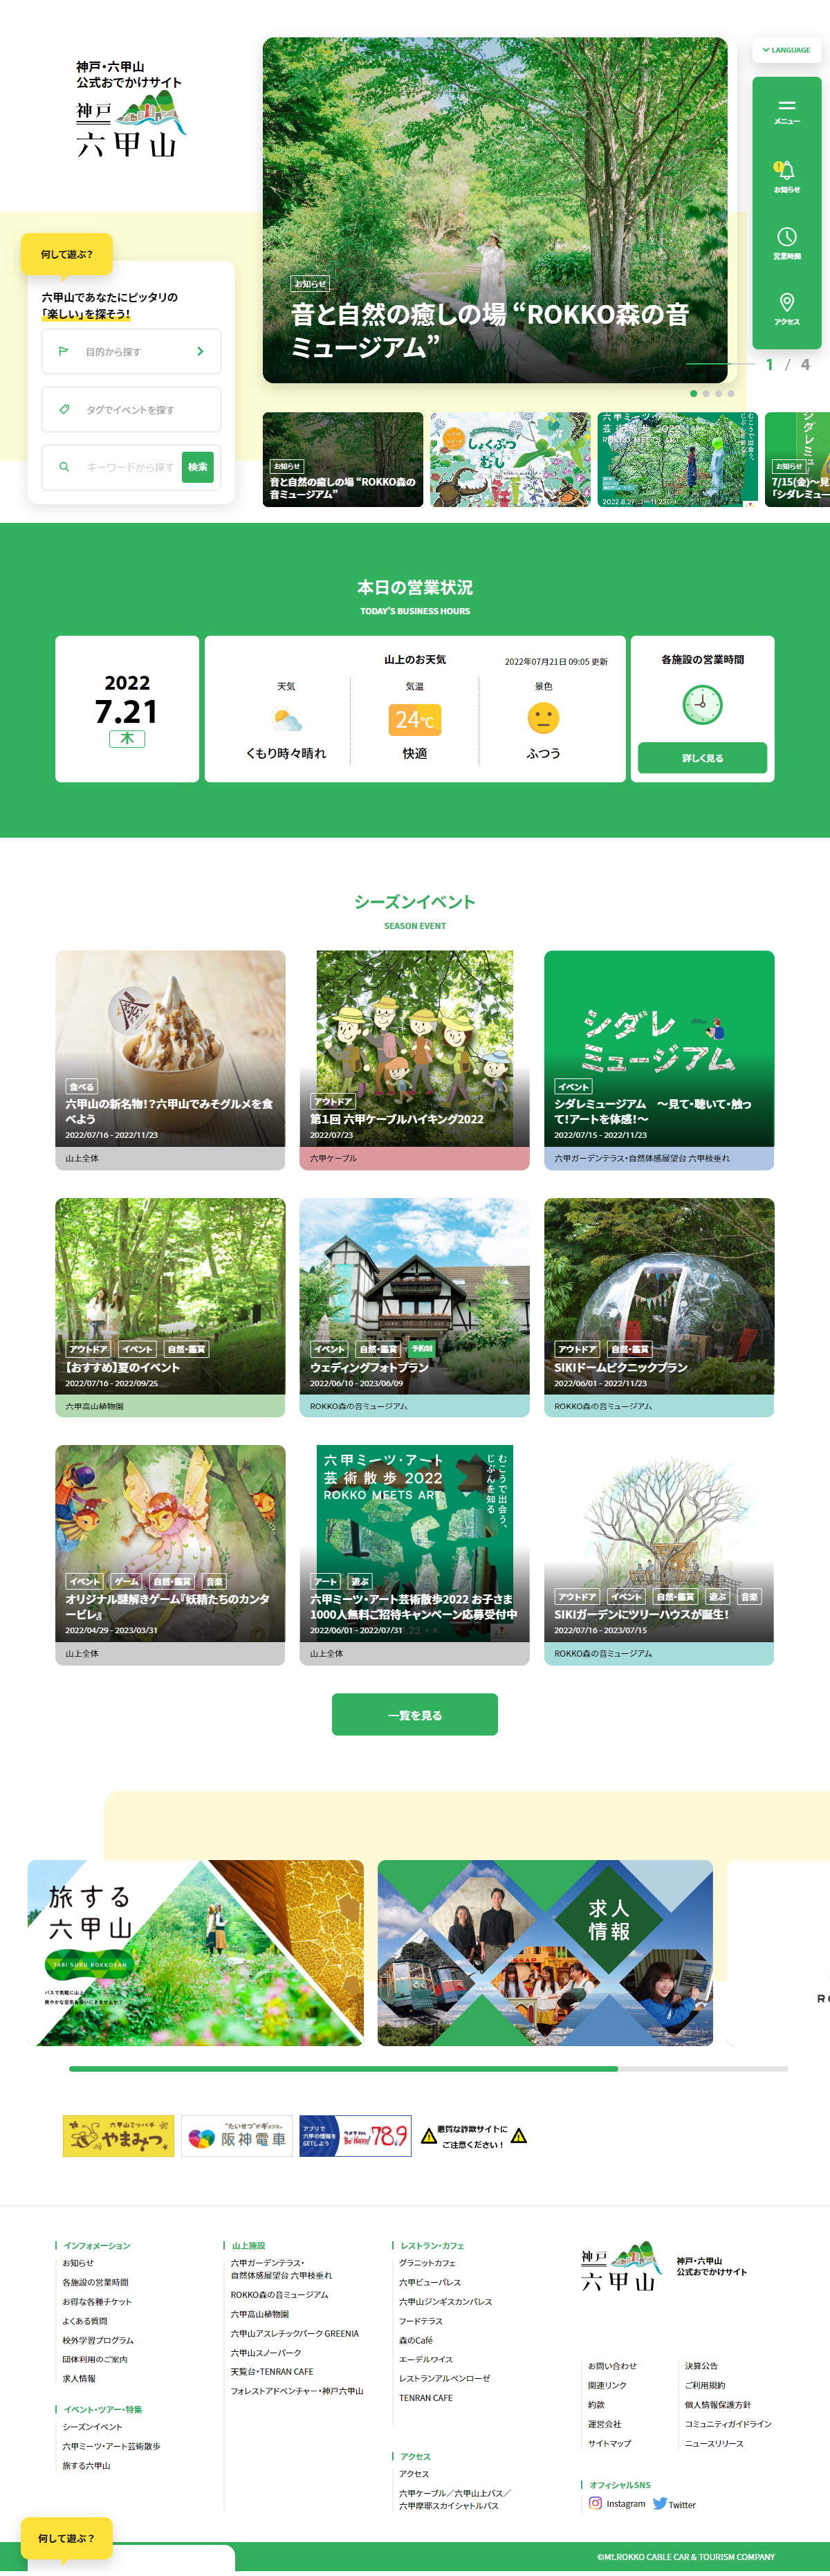 旅行・レジャー・観光 ホームページ制作 WEBデザイン参考ギャラリー 神戸・六甲山 公式おでかけサイト |